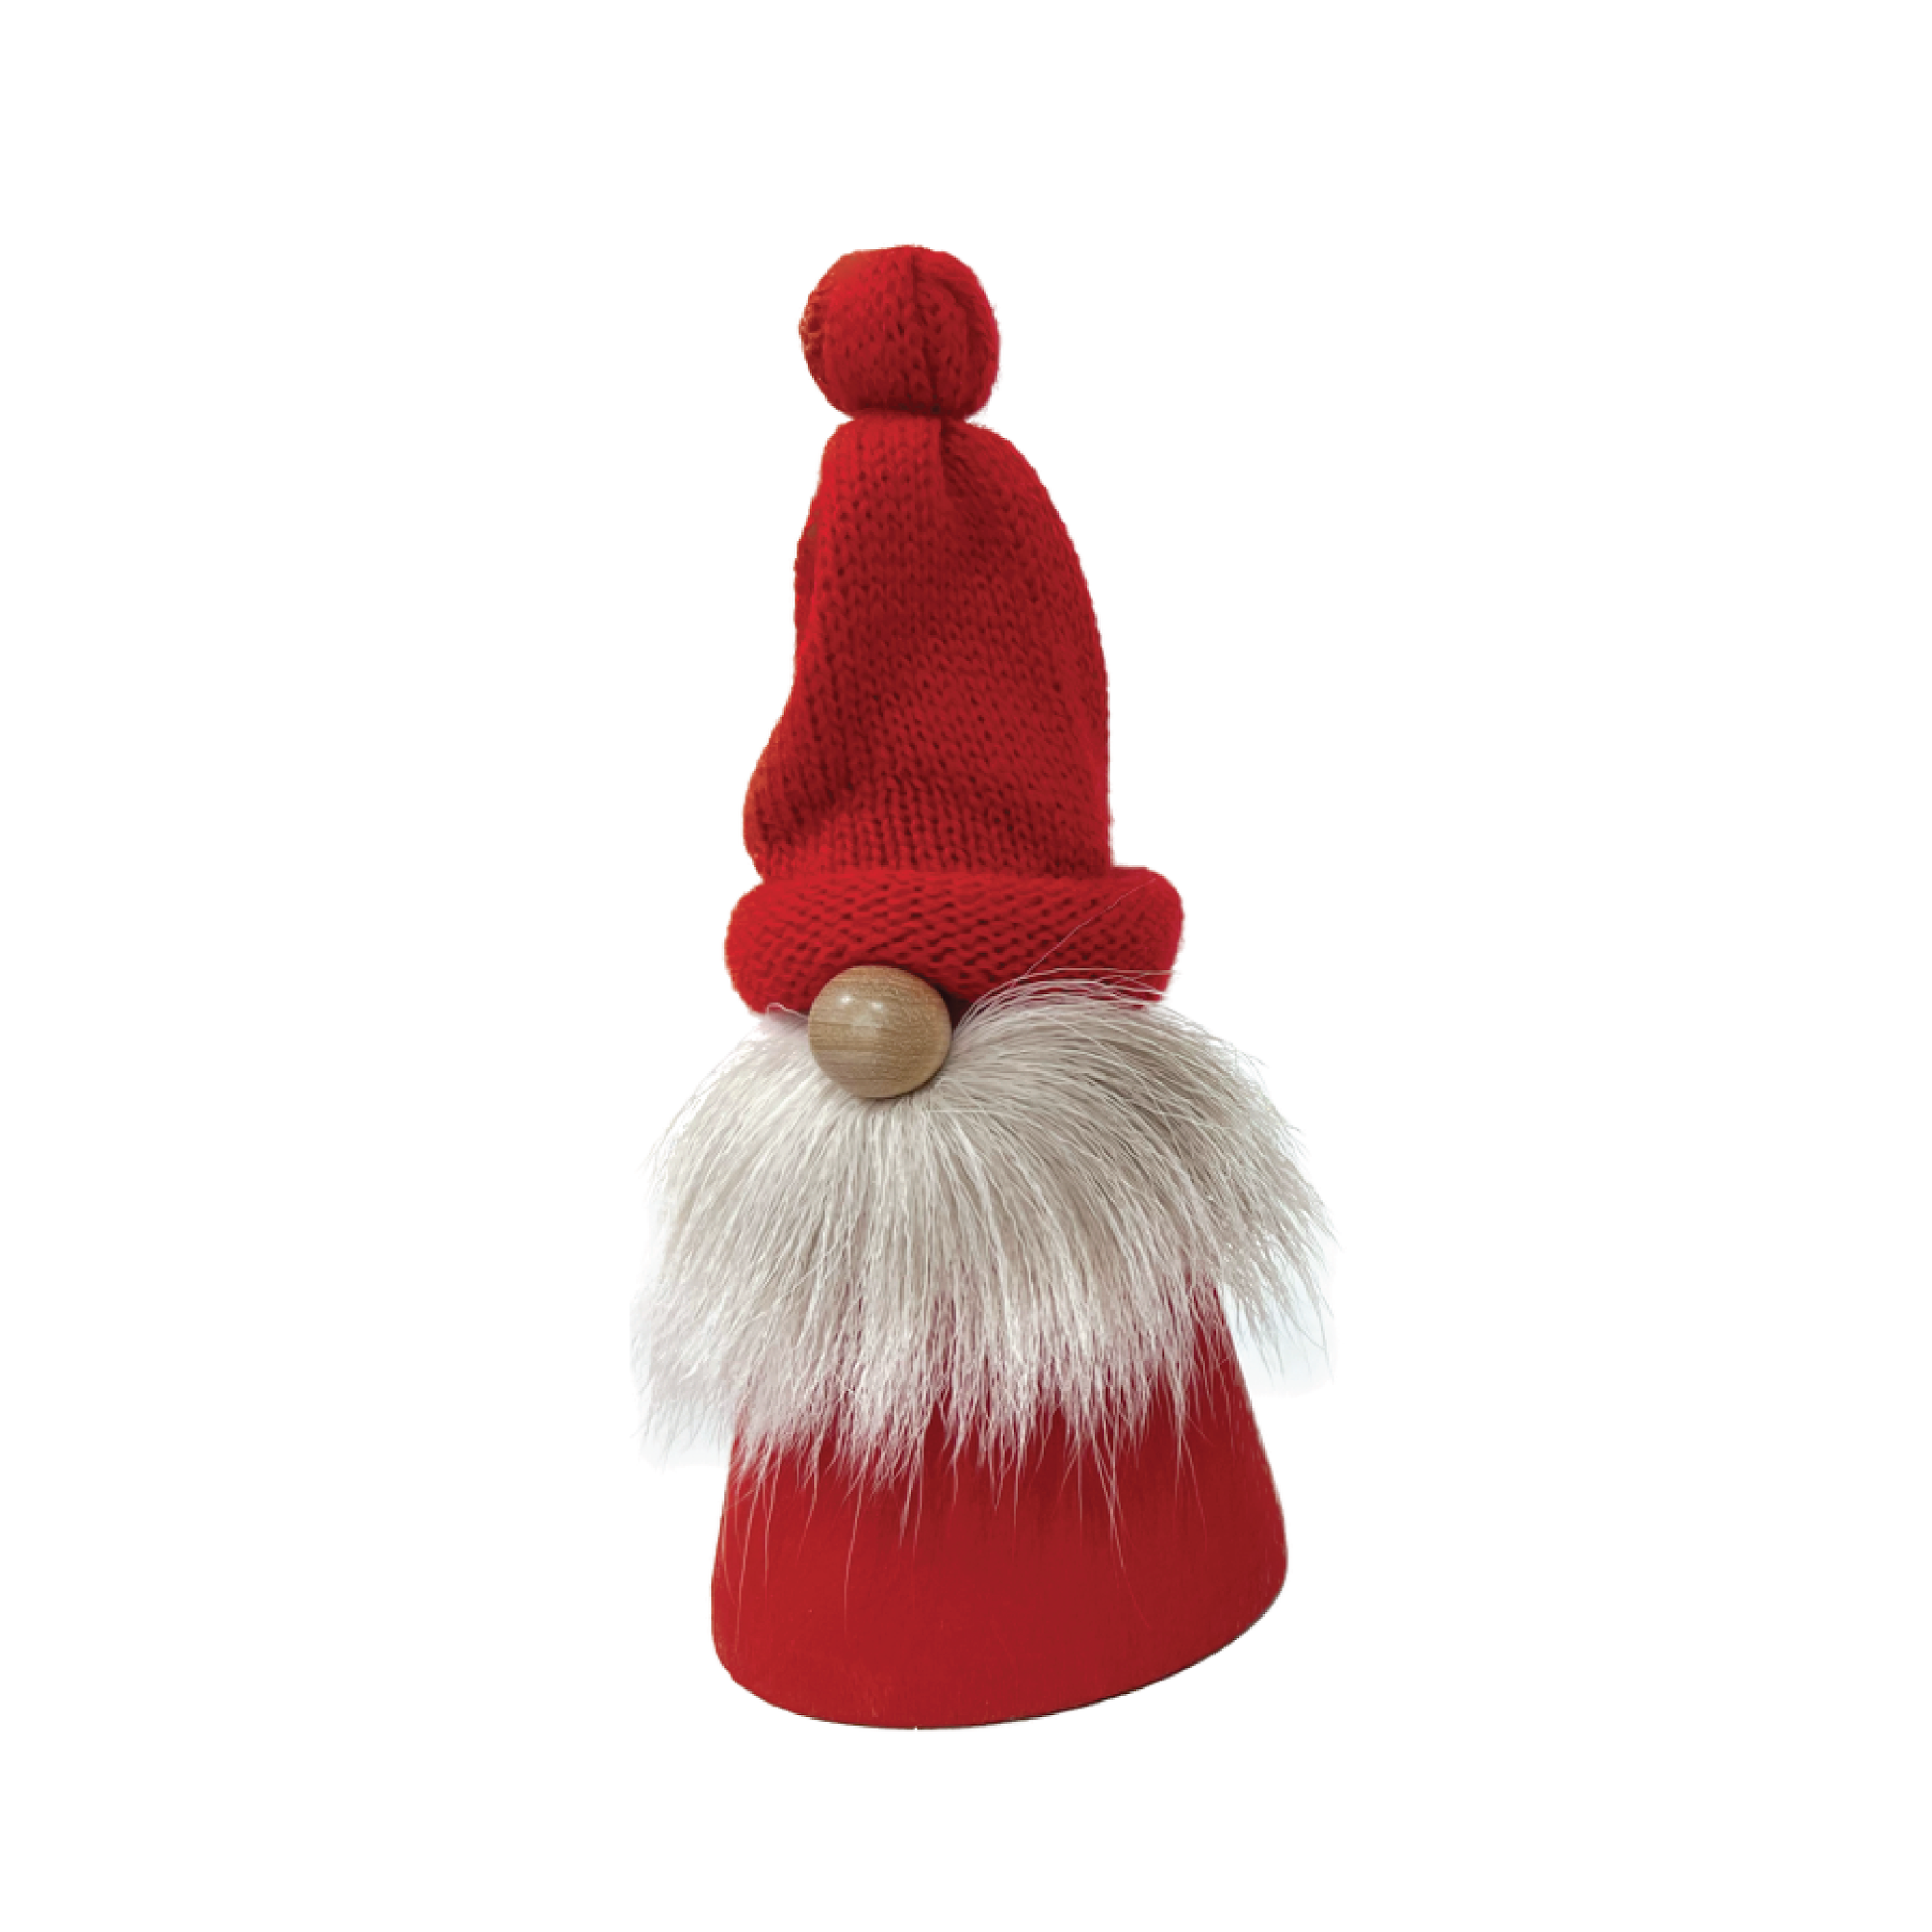 Tomte - Pom Pom Hat with Reindeer Beard